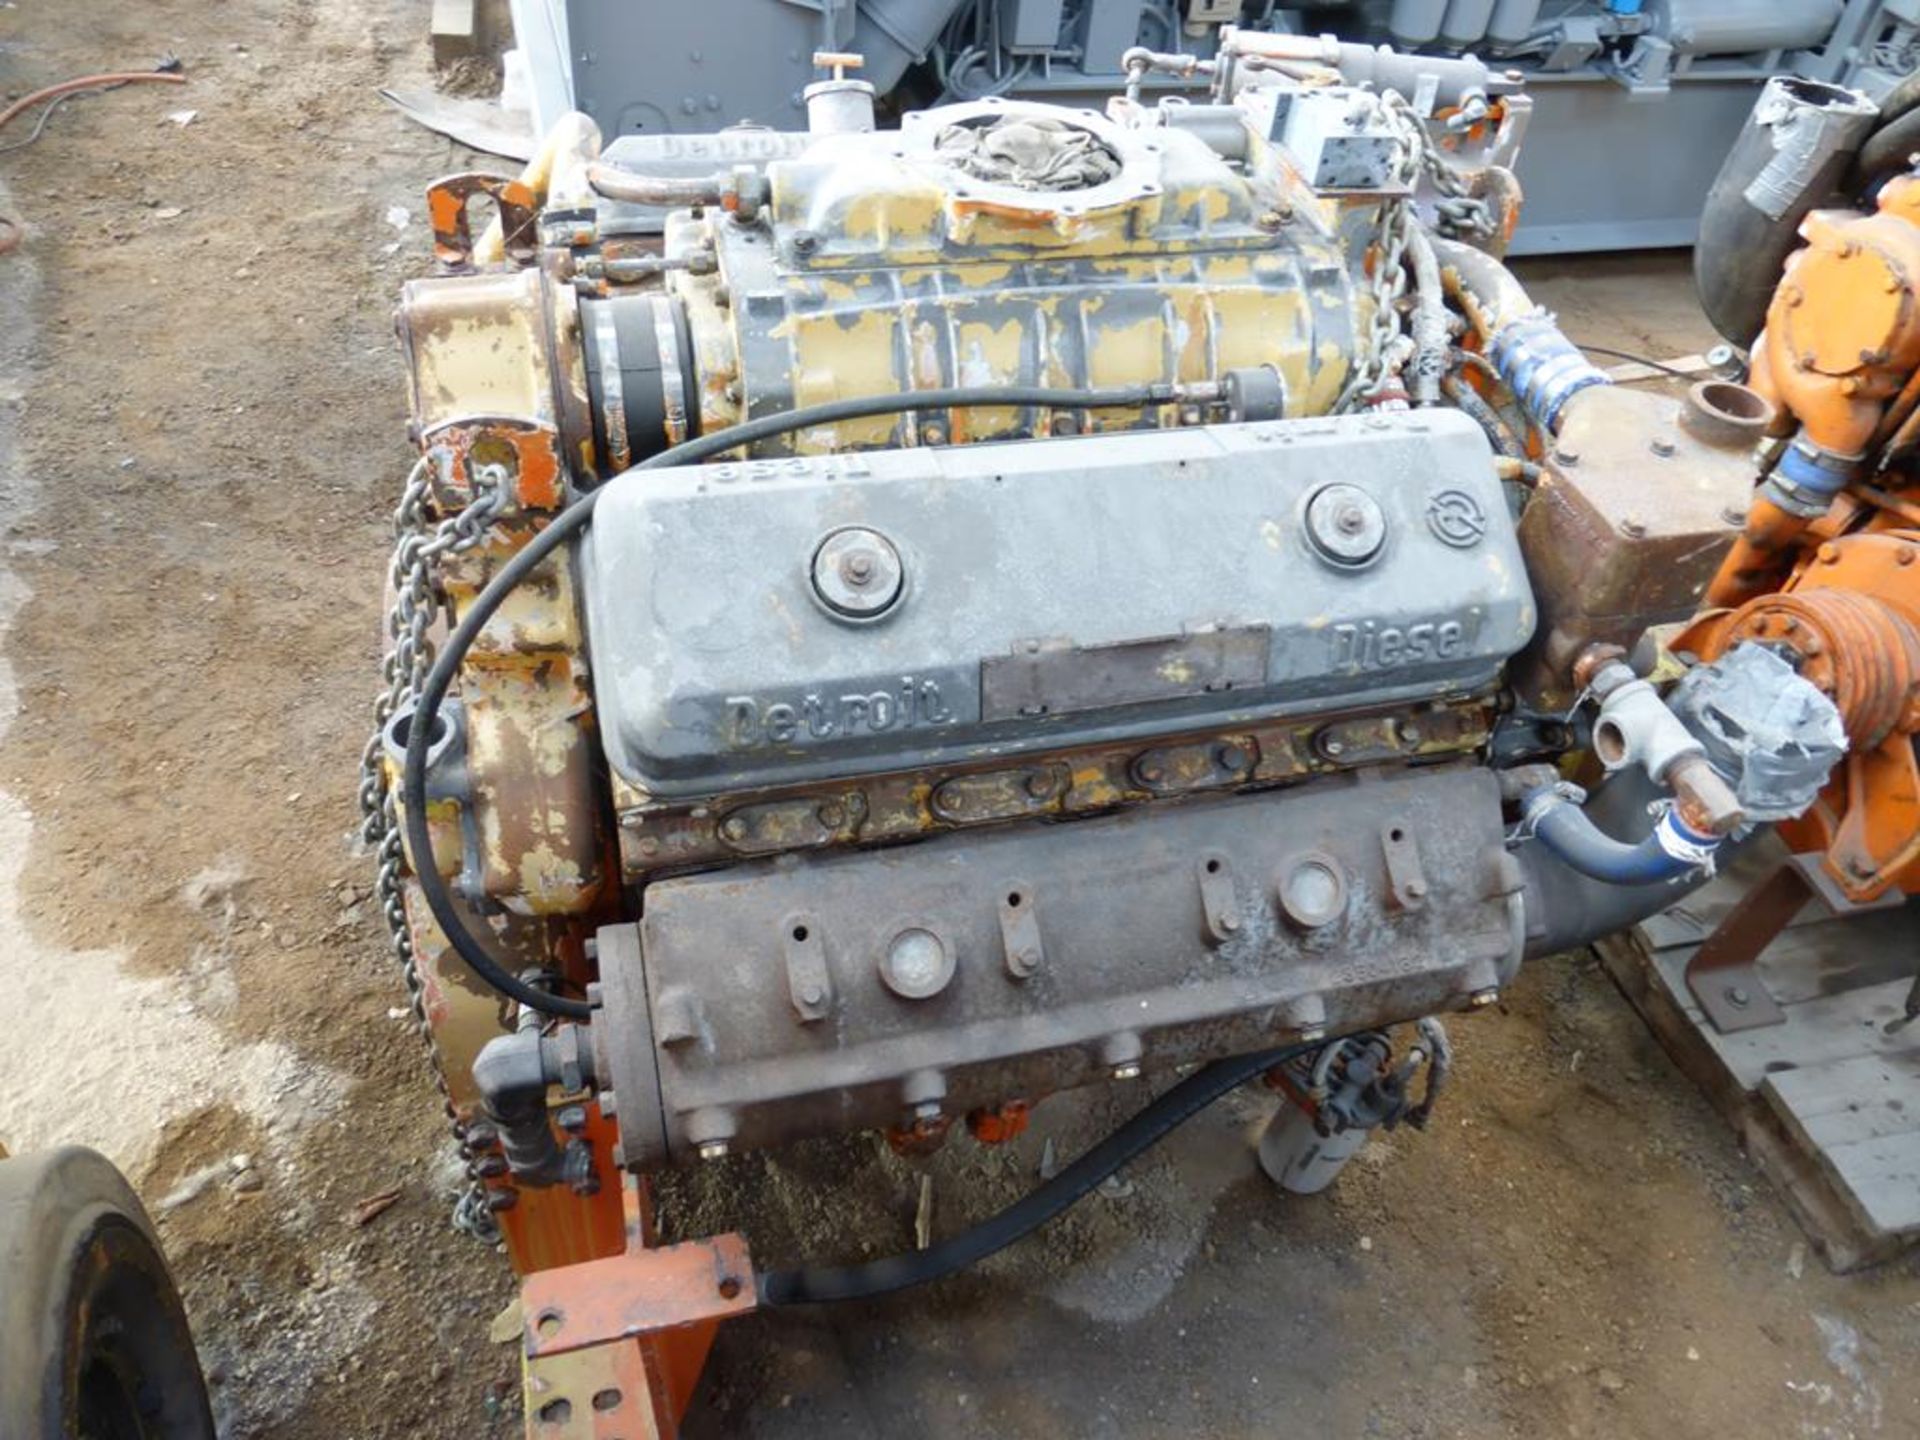 GM Detroit Model 71 V8 Marine Diesel Engine - Image 2 of 2